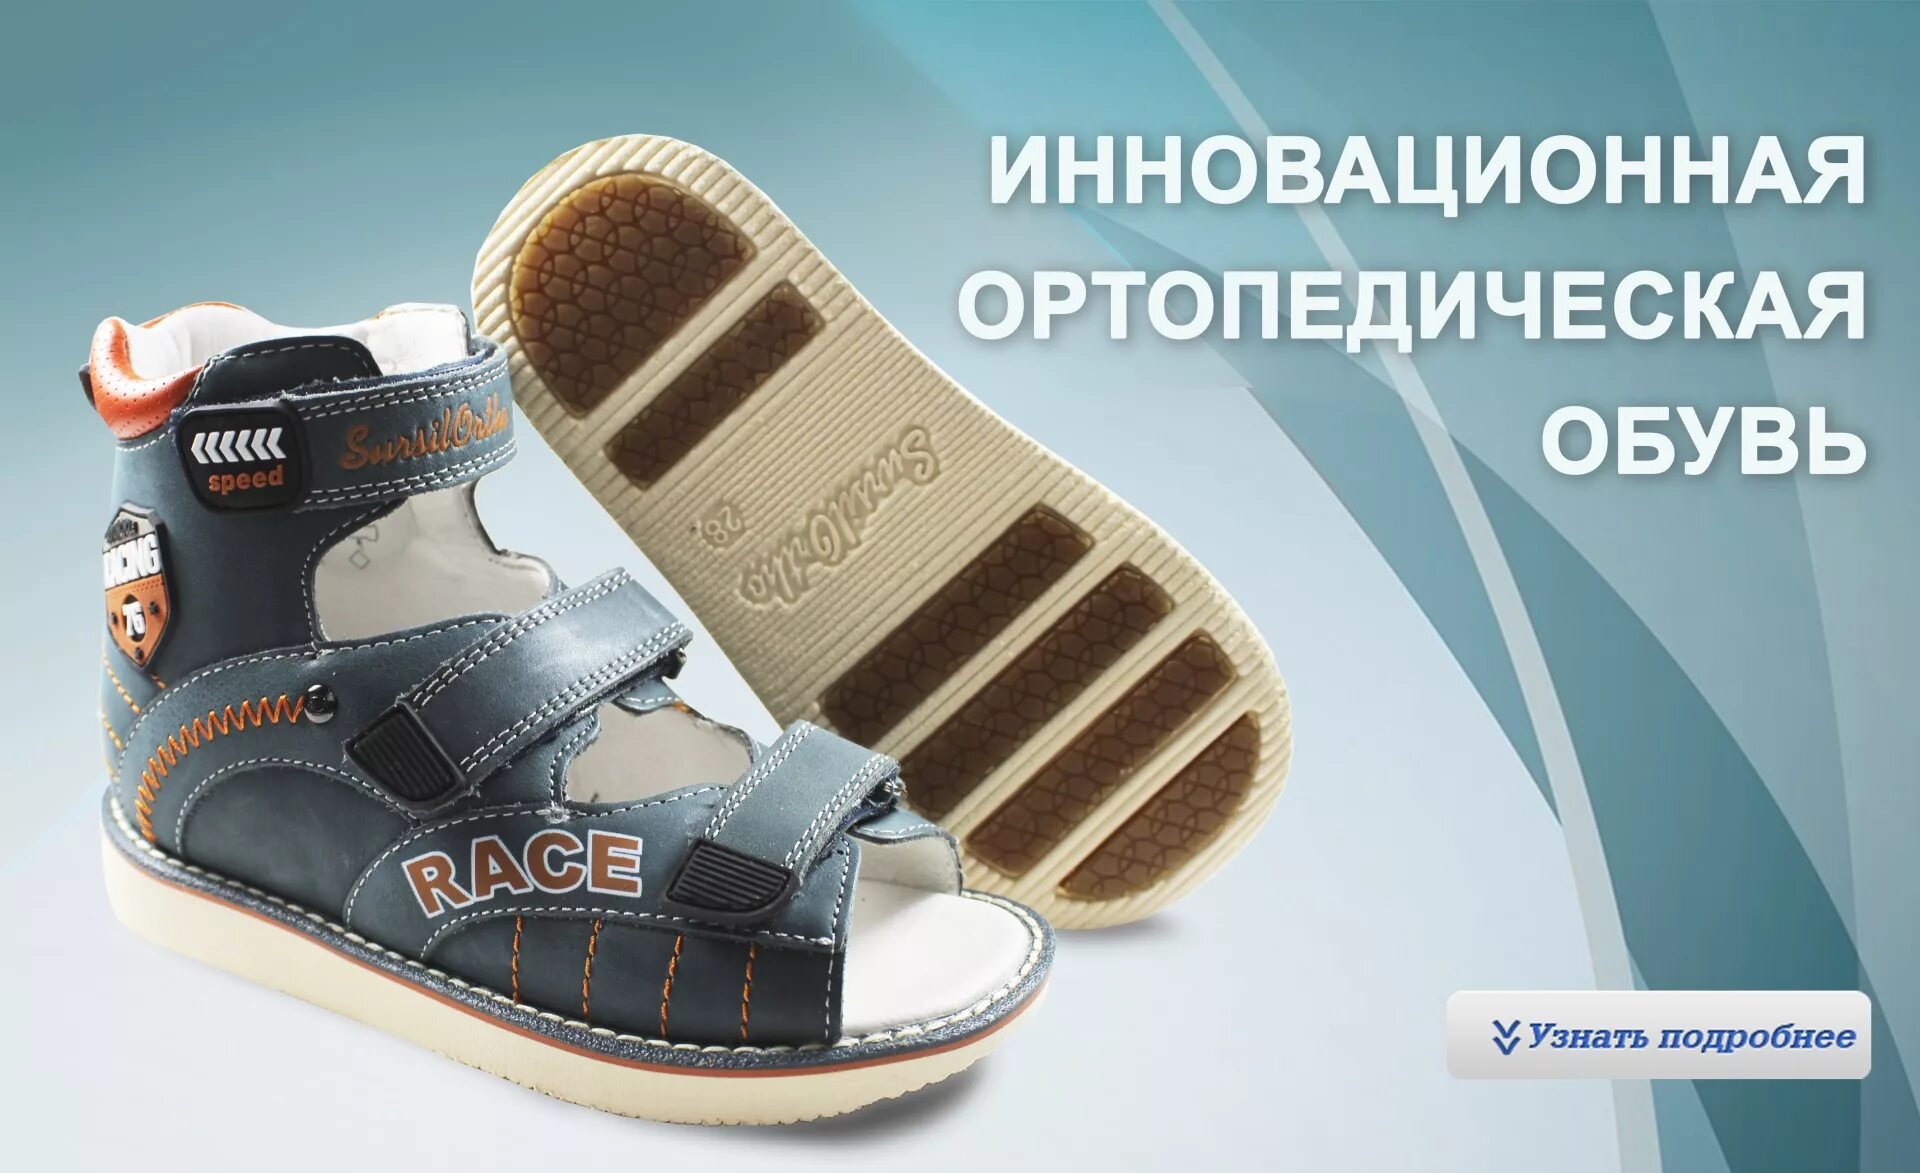 Купить ортопедическую обувь по сертификату. Ортопедическая обувь. Ортопедическая обувь для детей. Ортопедическая обувь реклама. Ортопедическая обувь для детей реклама.